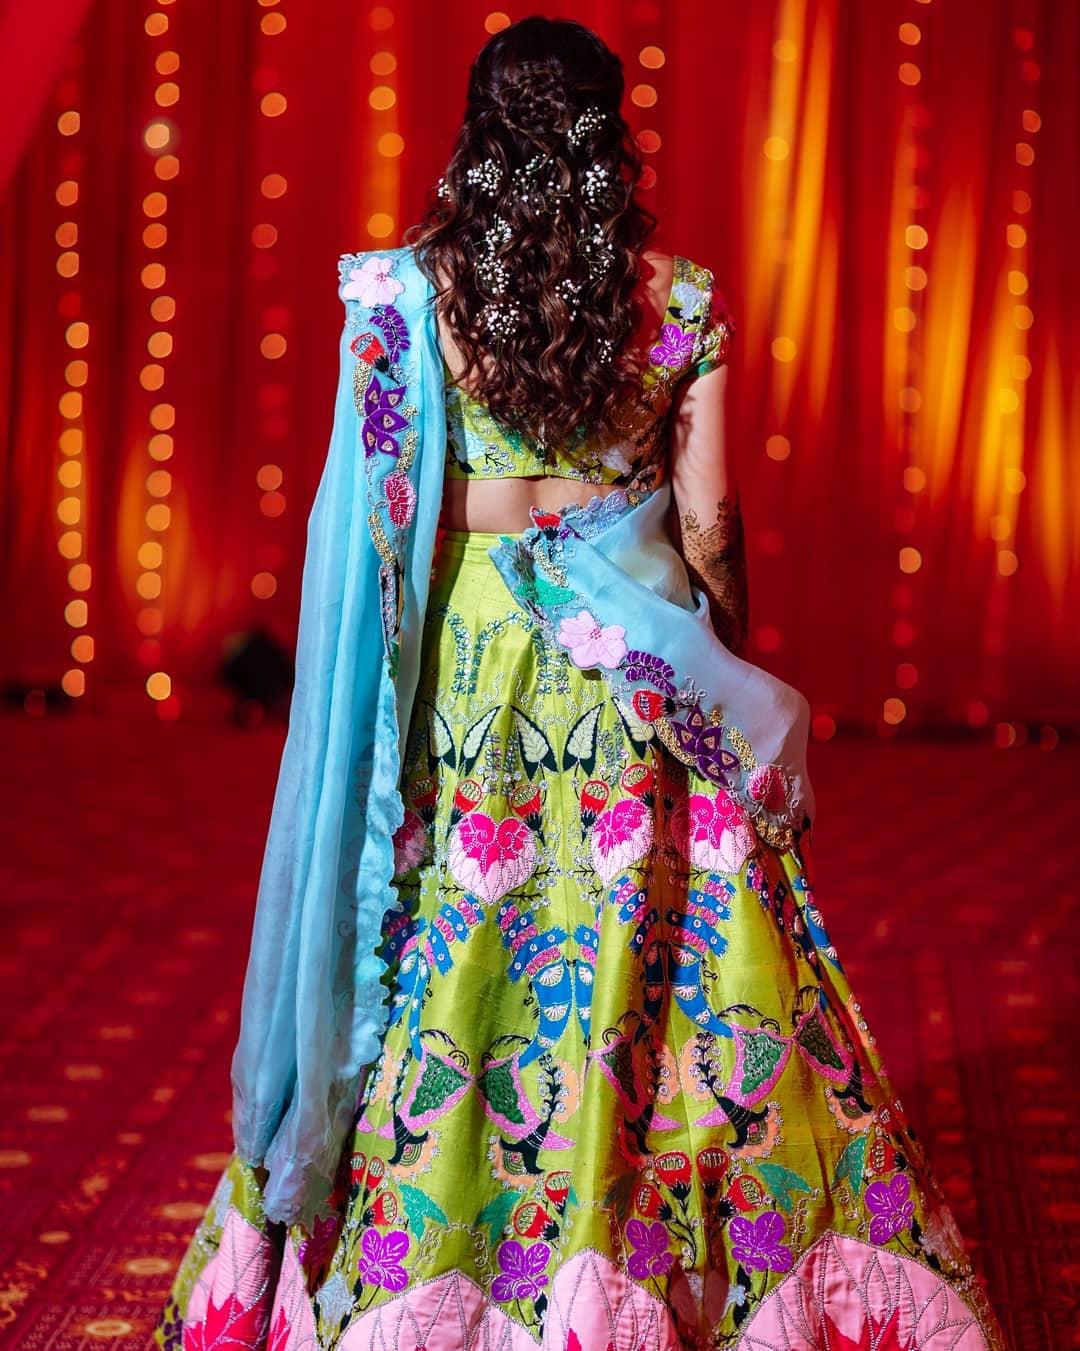 Sania Mirza's sister wedding, mehendi outfit ideas